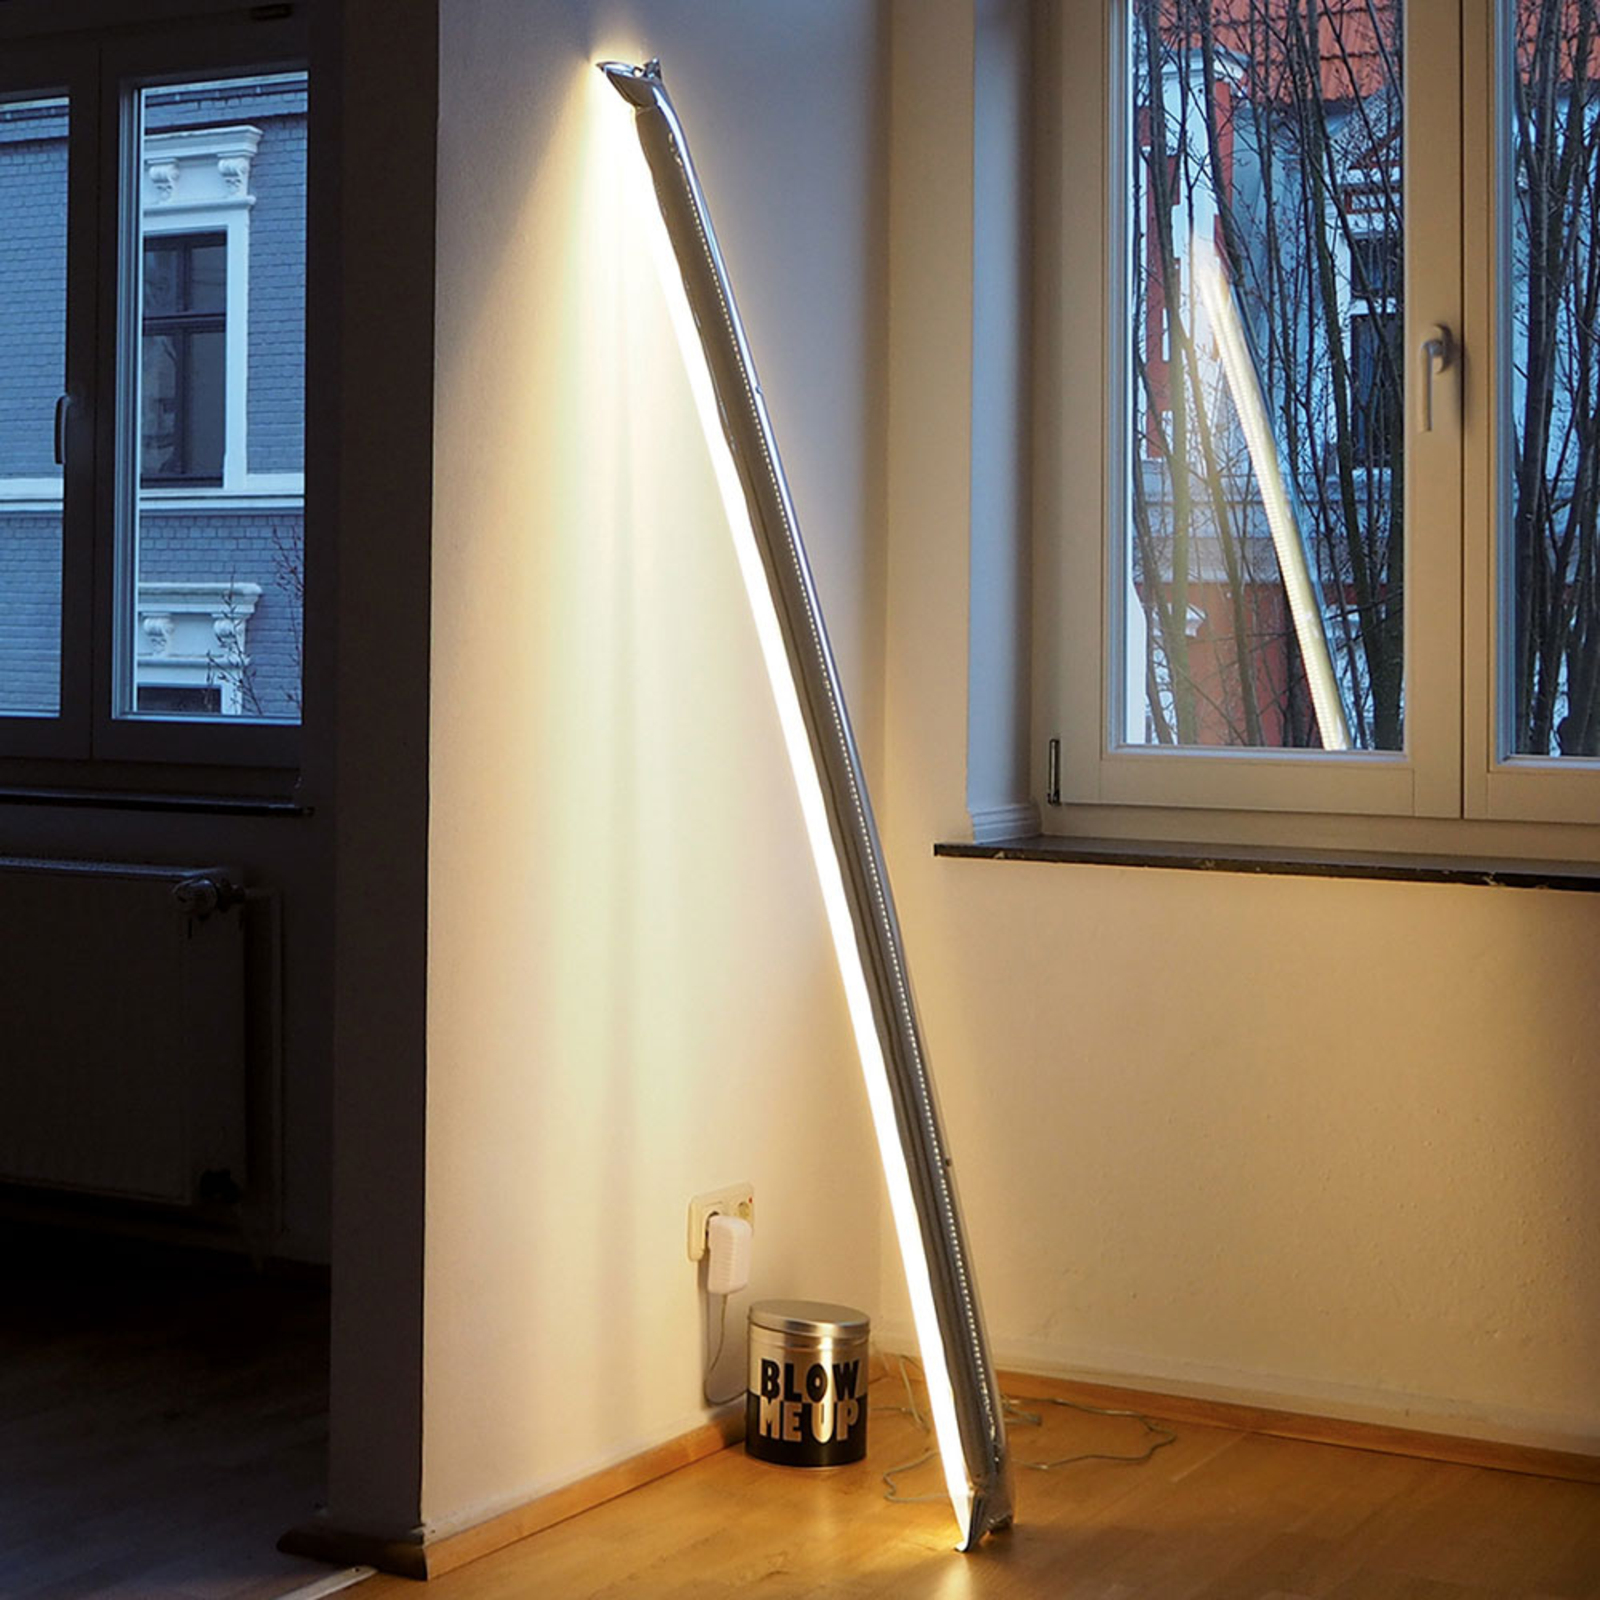 Ingo Maurer Blow Me Up -LED-lattiavalo 120cm hopea